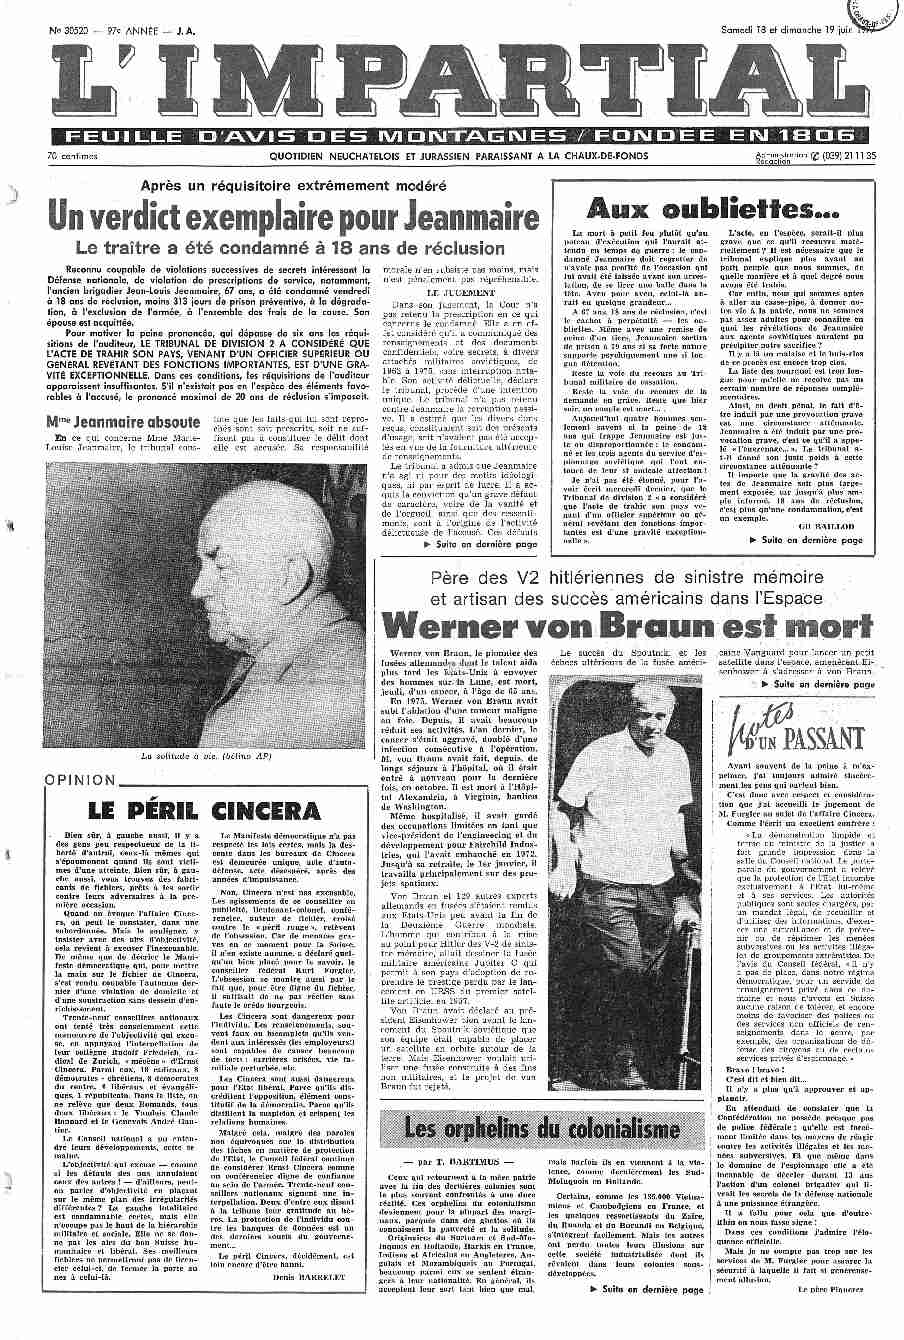 Werner von Braun est mort